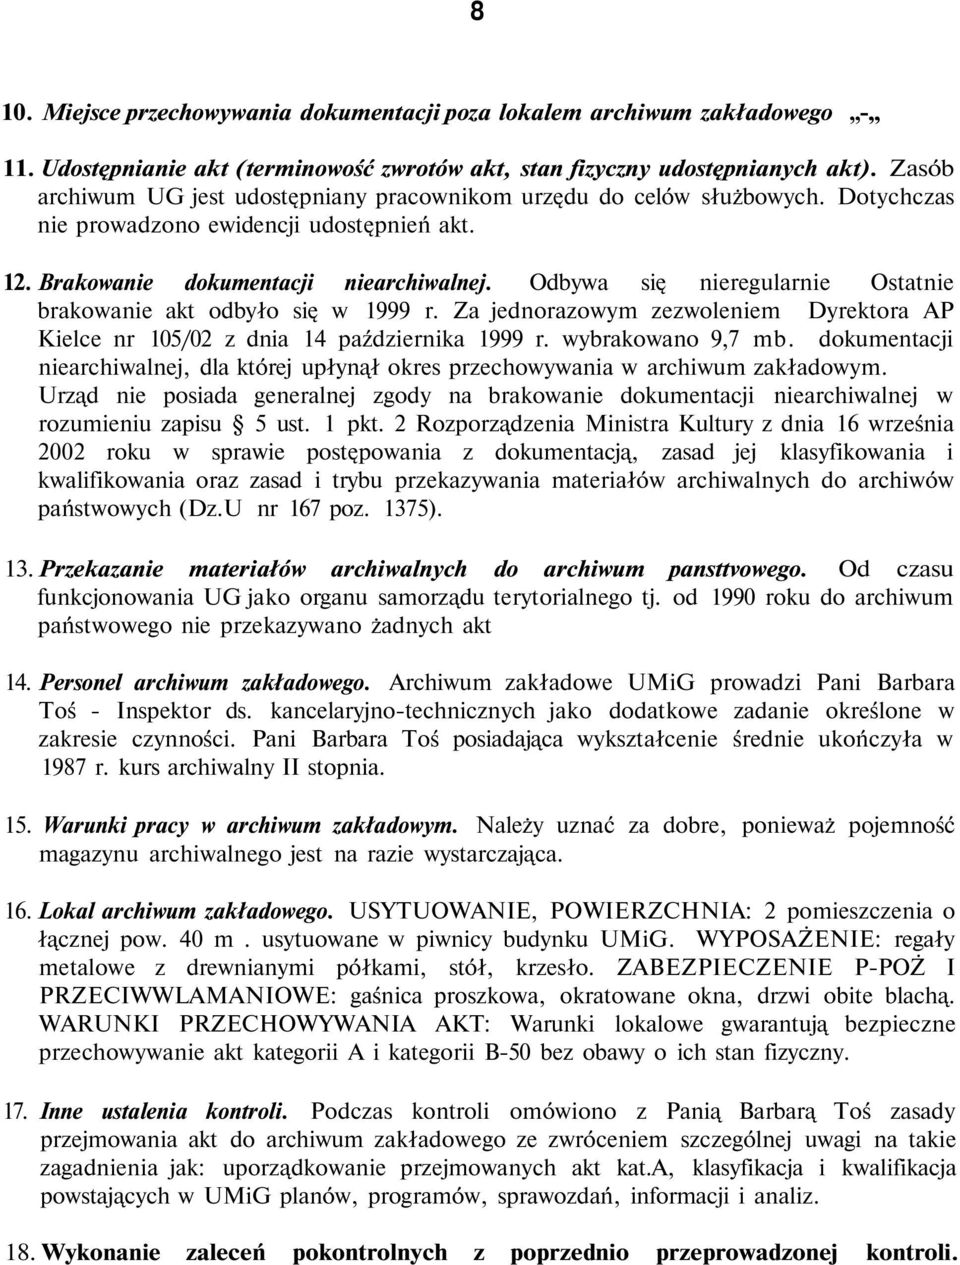 Odbywa się nieregularnie Ostatnie brakowanie akt odbyło się w 1999 r. Za jednorazowym zezwoleniem Dyrektora AP Kielce nr 105/02 z dnia 14 października 1999 r. wybrakowano 9,7 mb.